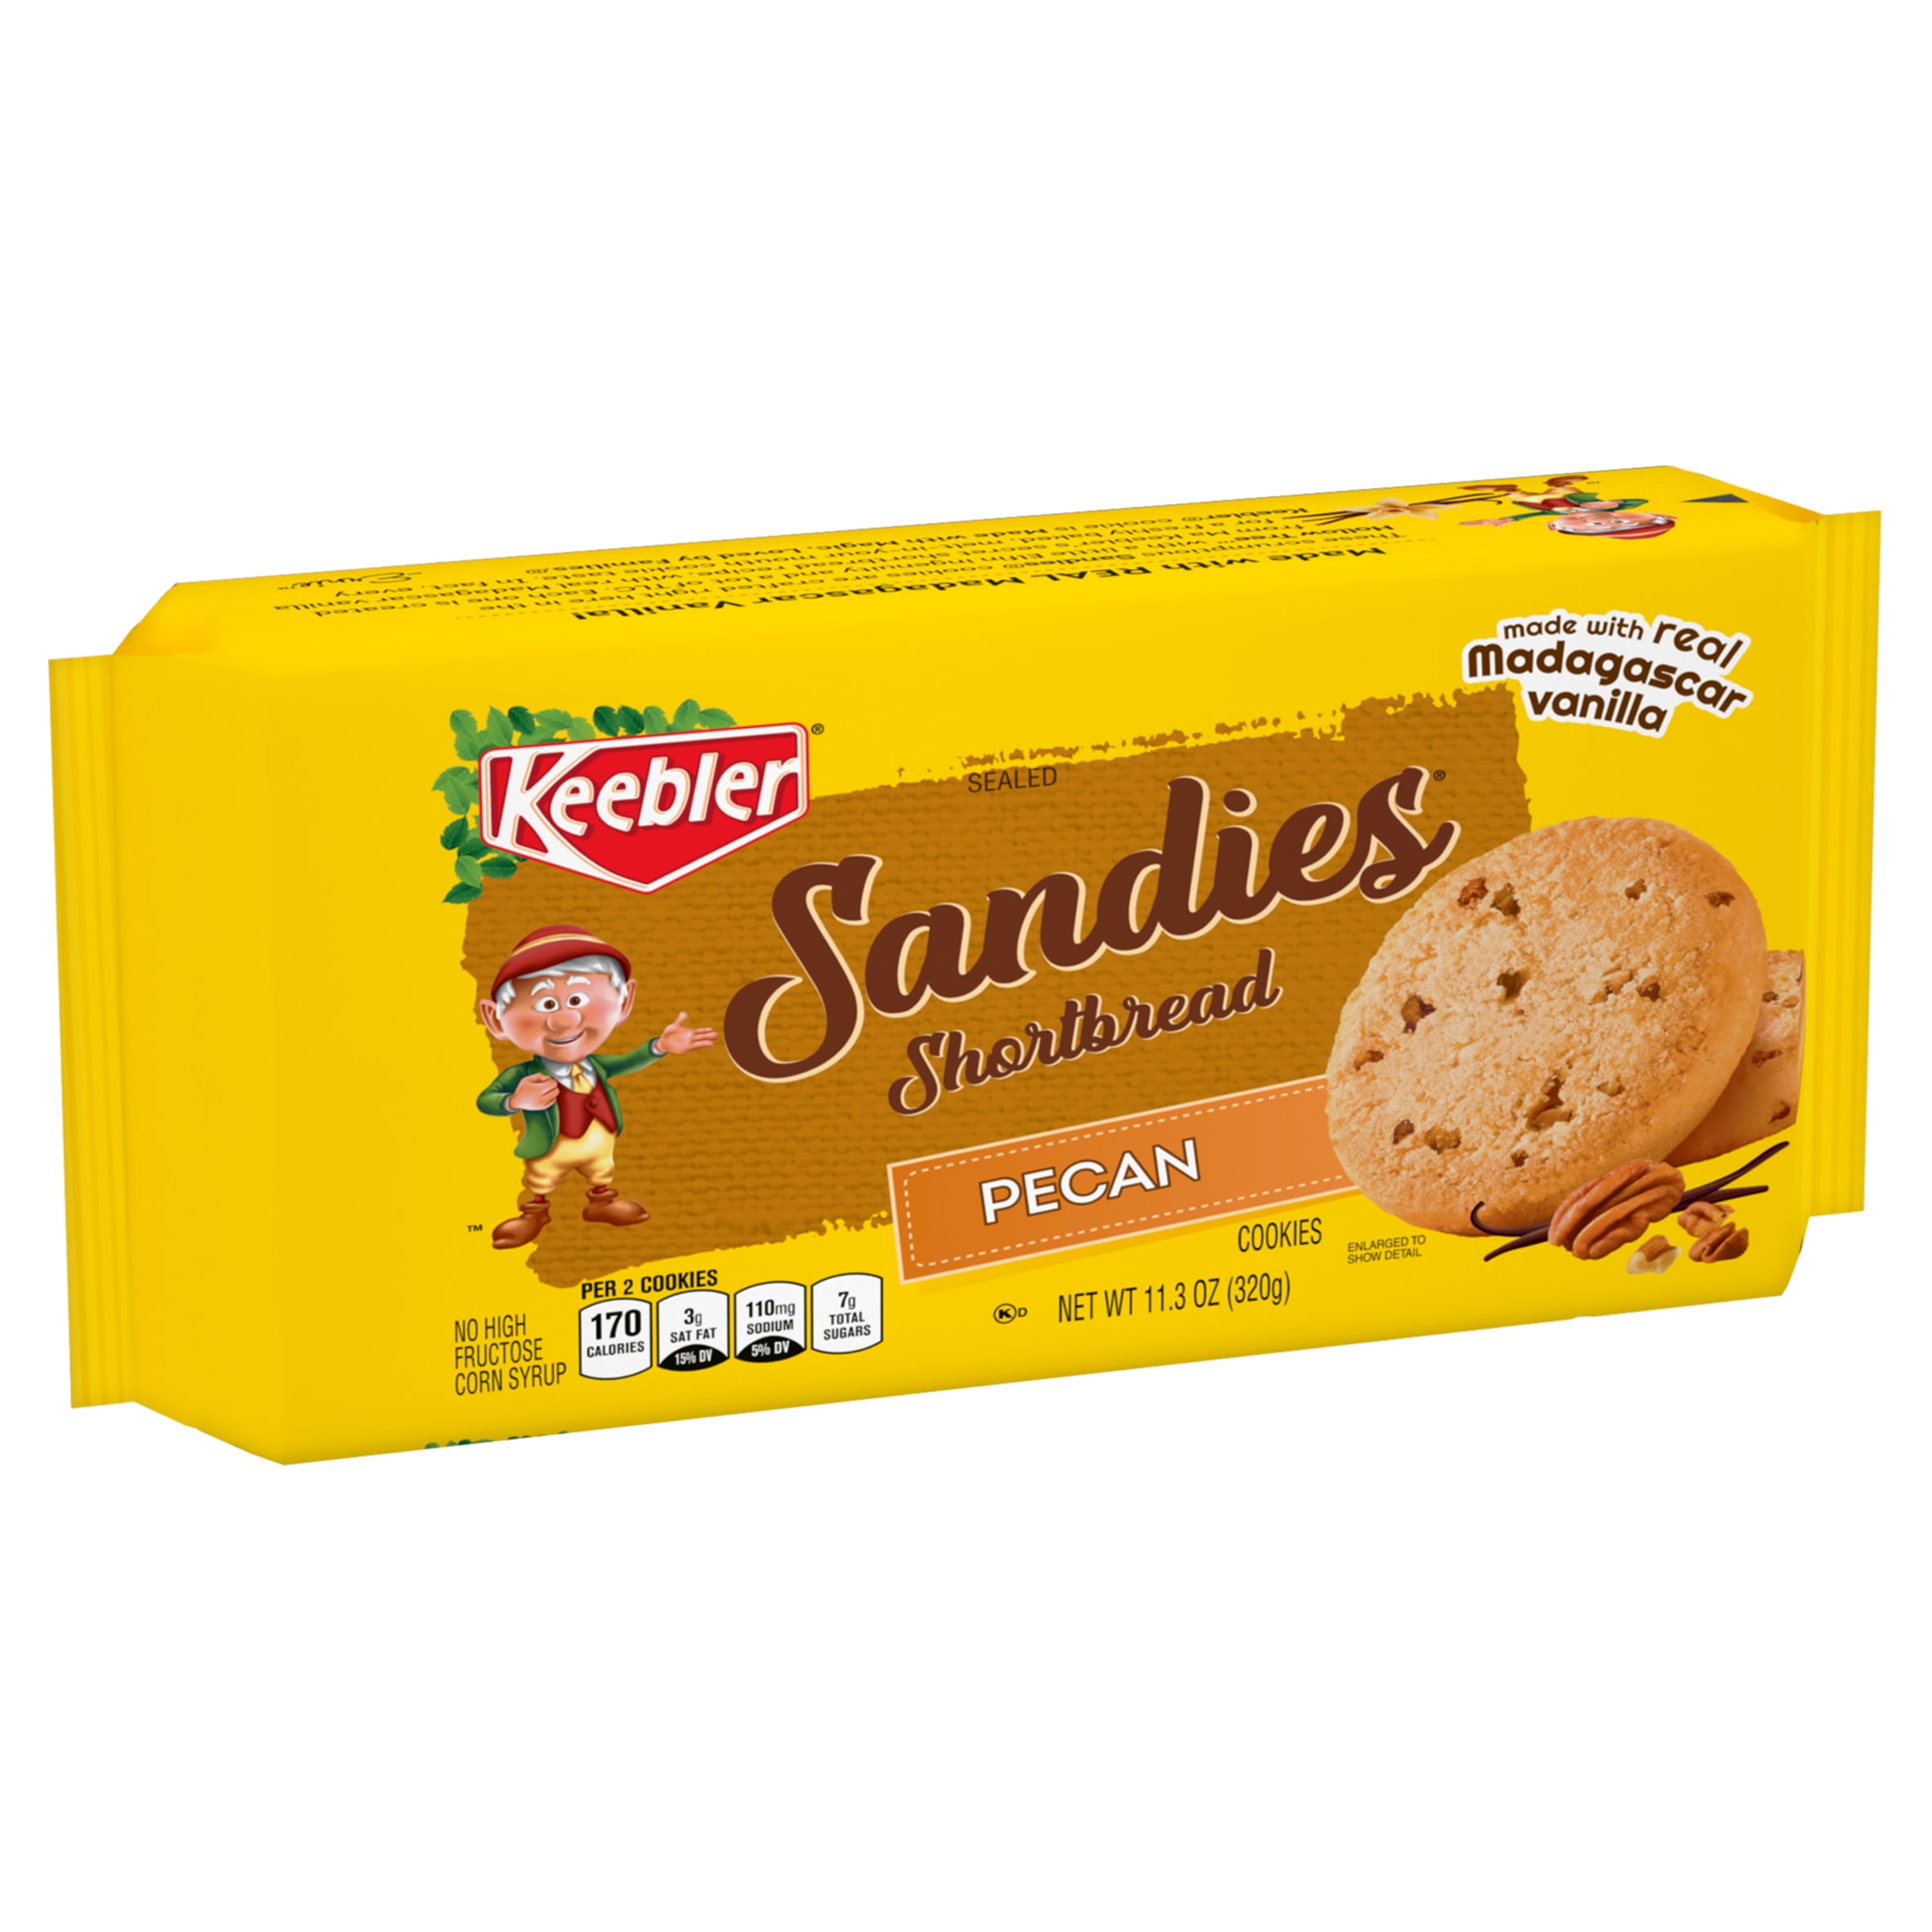 Keebler Sandies Pecan Shortbread Cookies, 11.3 oz